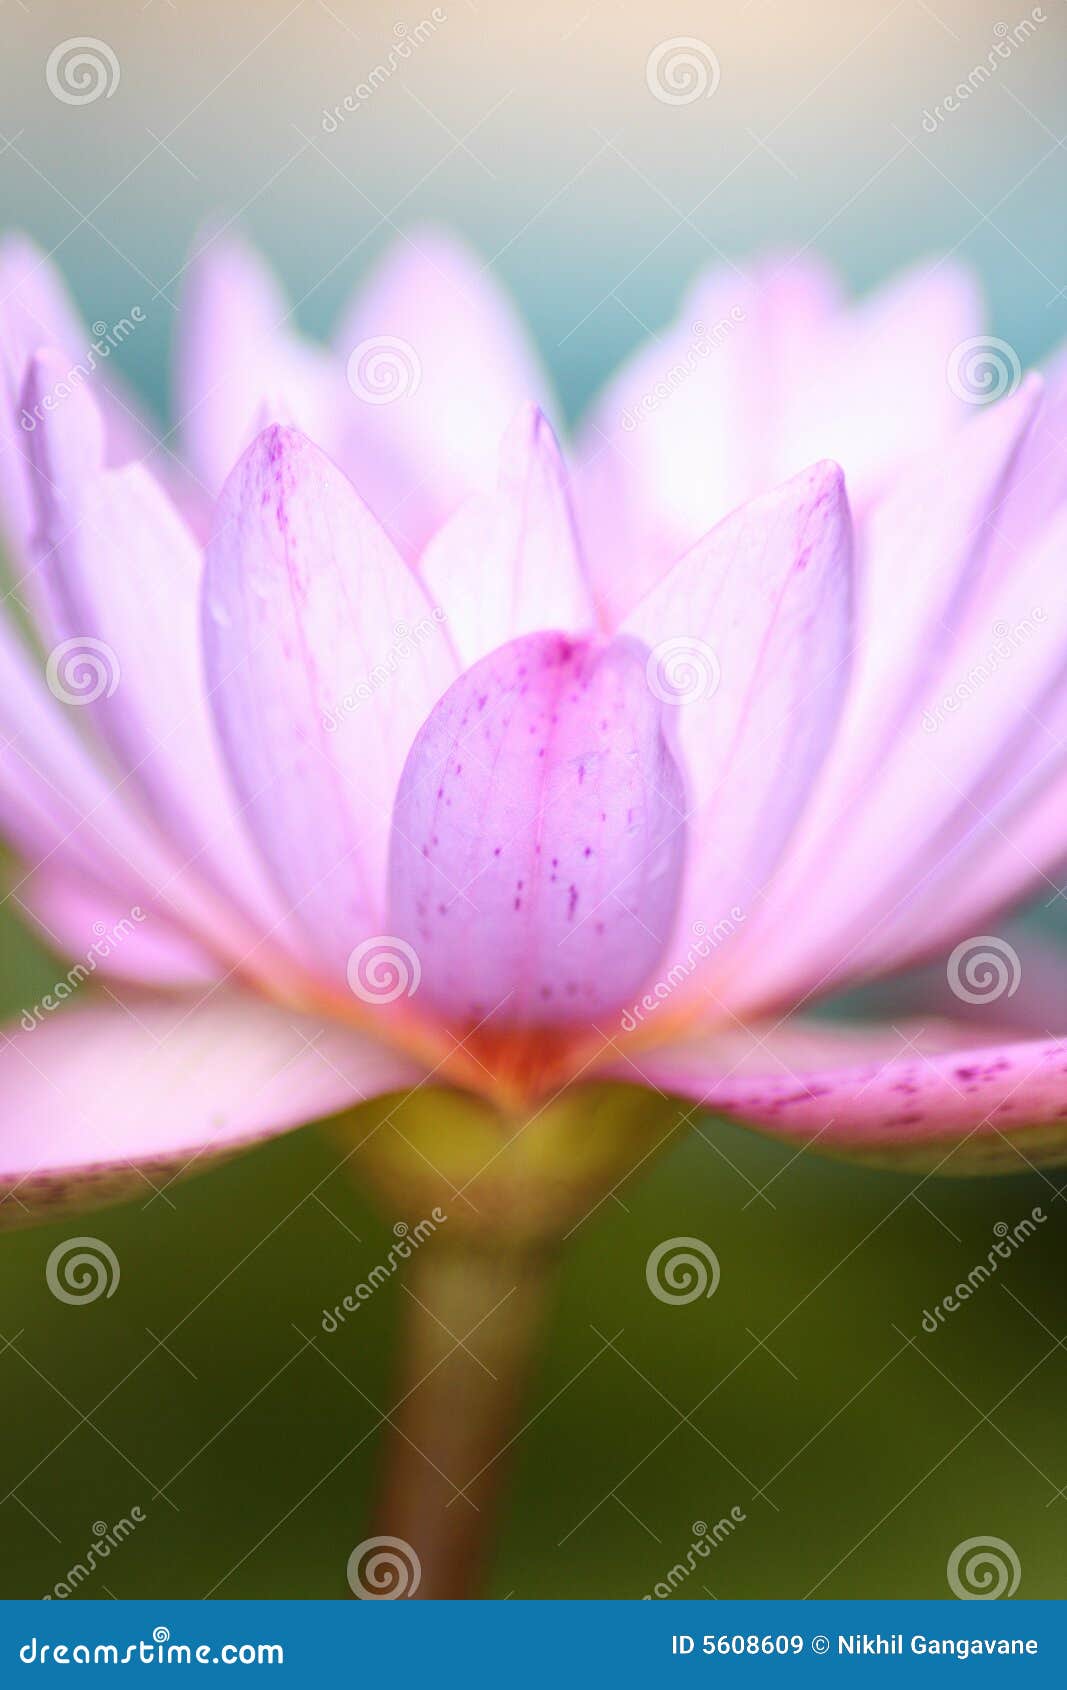 lavender petal